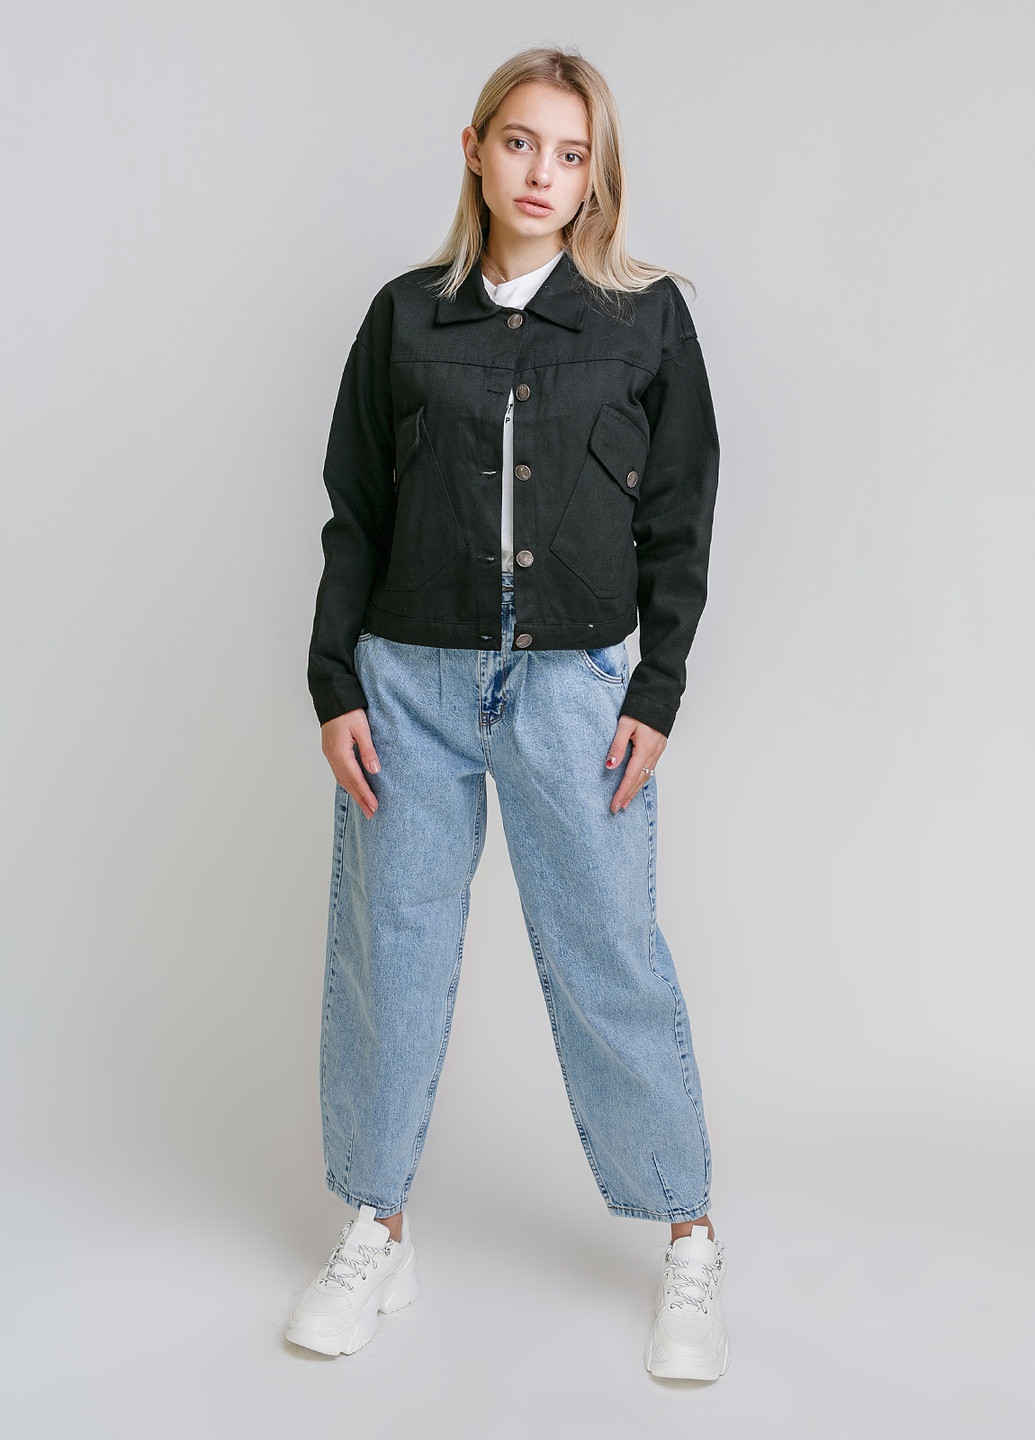 Черный женский пиджак джинс короткий, накладные косые карманы Asist однотонный - летний